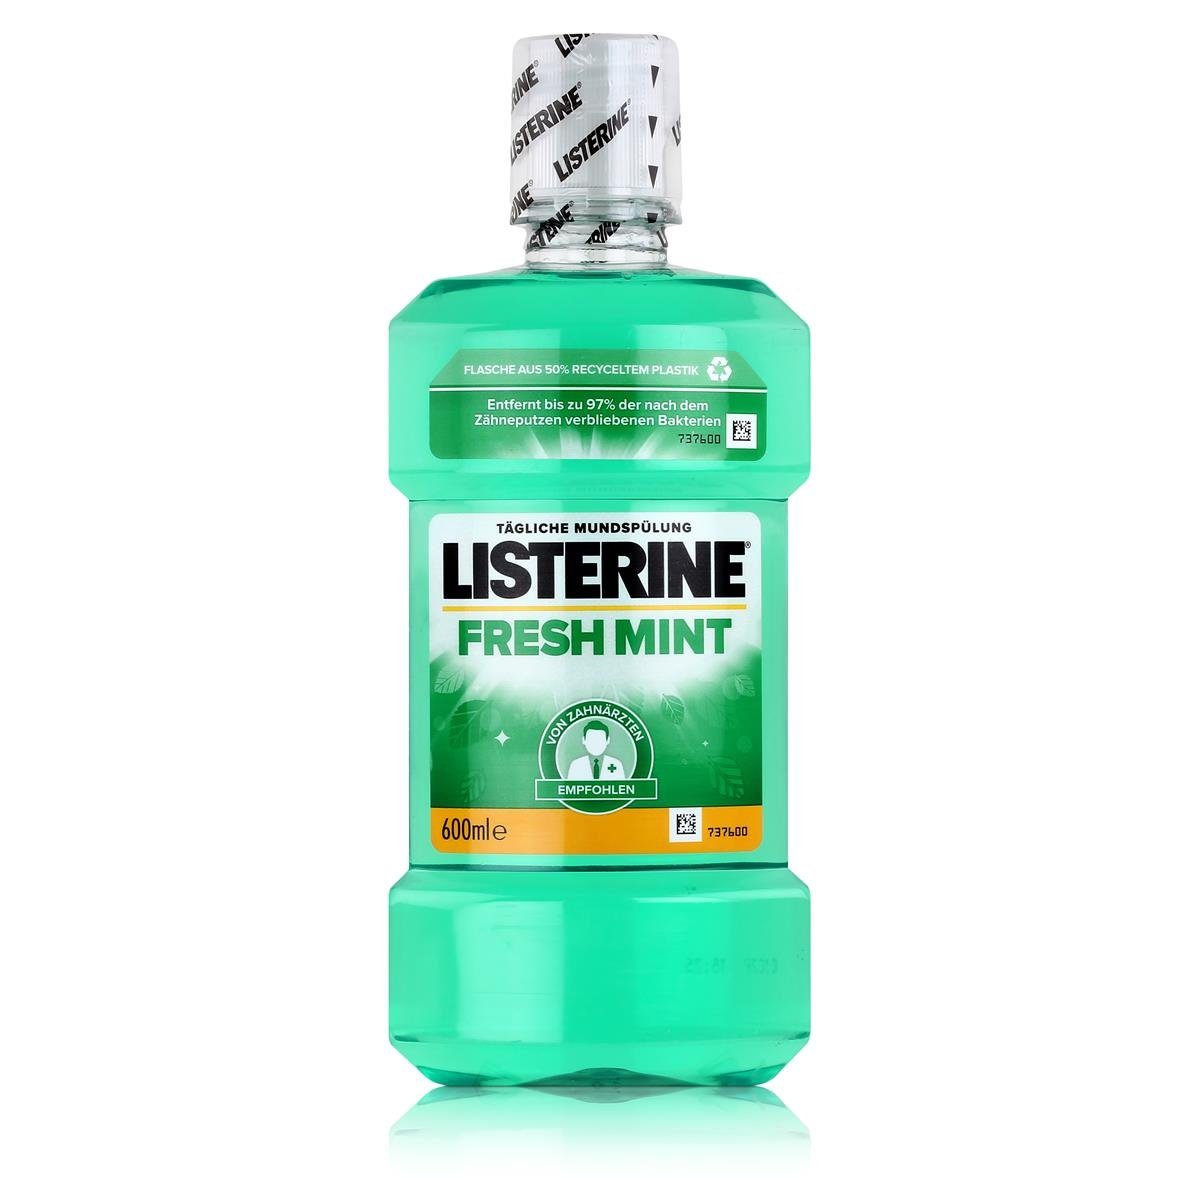 Listerine Mundspülung, Listerine Fresh Mint 600ml - Für die tägliche Mundspülung (1er Pack)